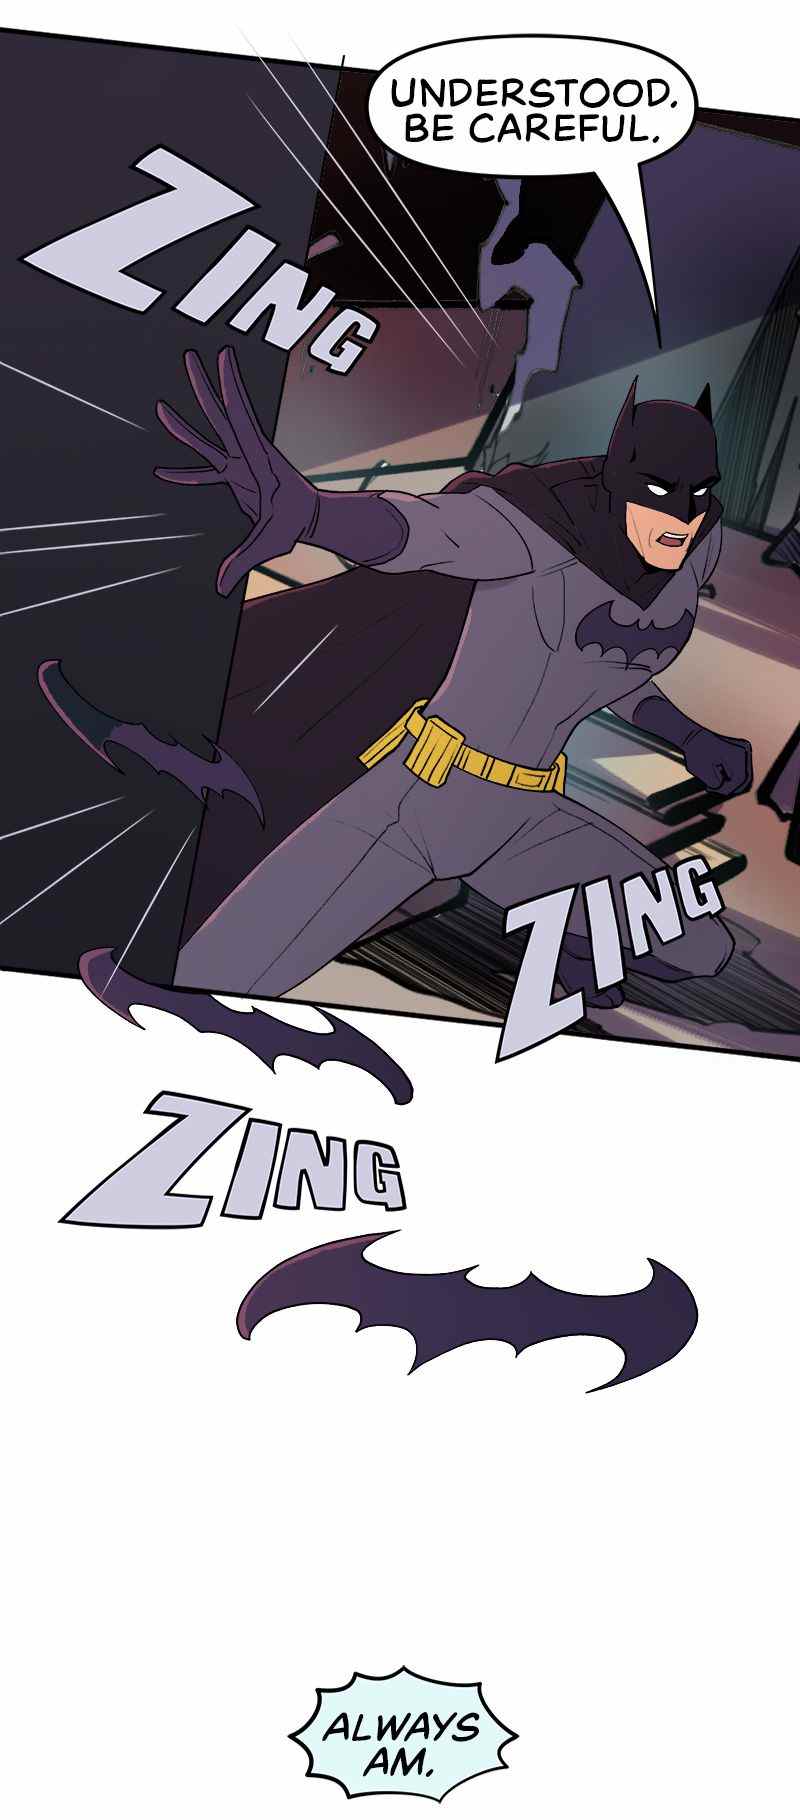 Batman dit à Robin de faire attention lorsqu'il lance des batarangs.  